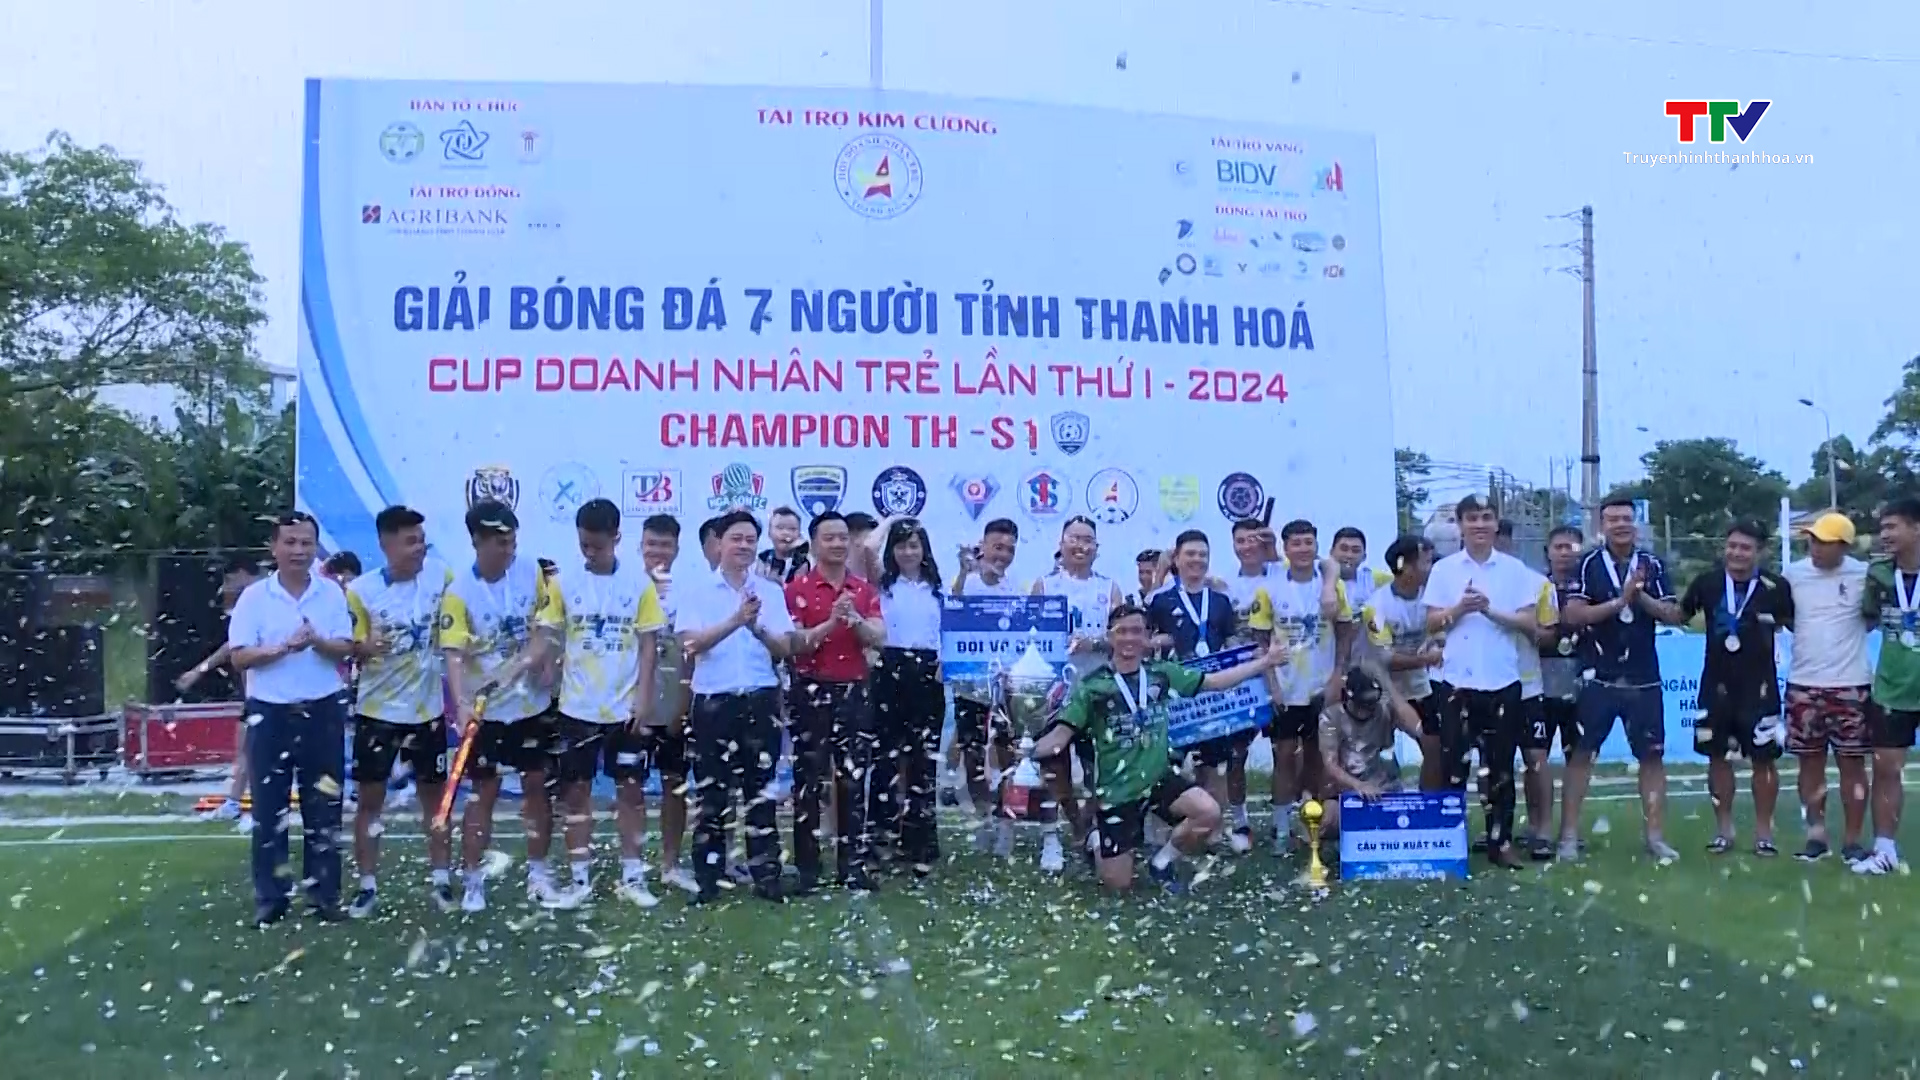 Giải Bóng đá 7 người tỉnh Thanh Hóa - Cup Doanh nhân trẻ lần thứ I, năm 2024 khép lại với nhiều ấn tượng- Ảnh 4.